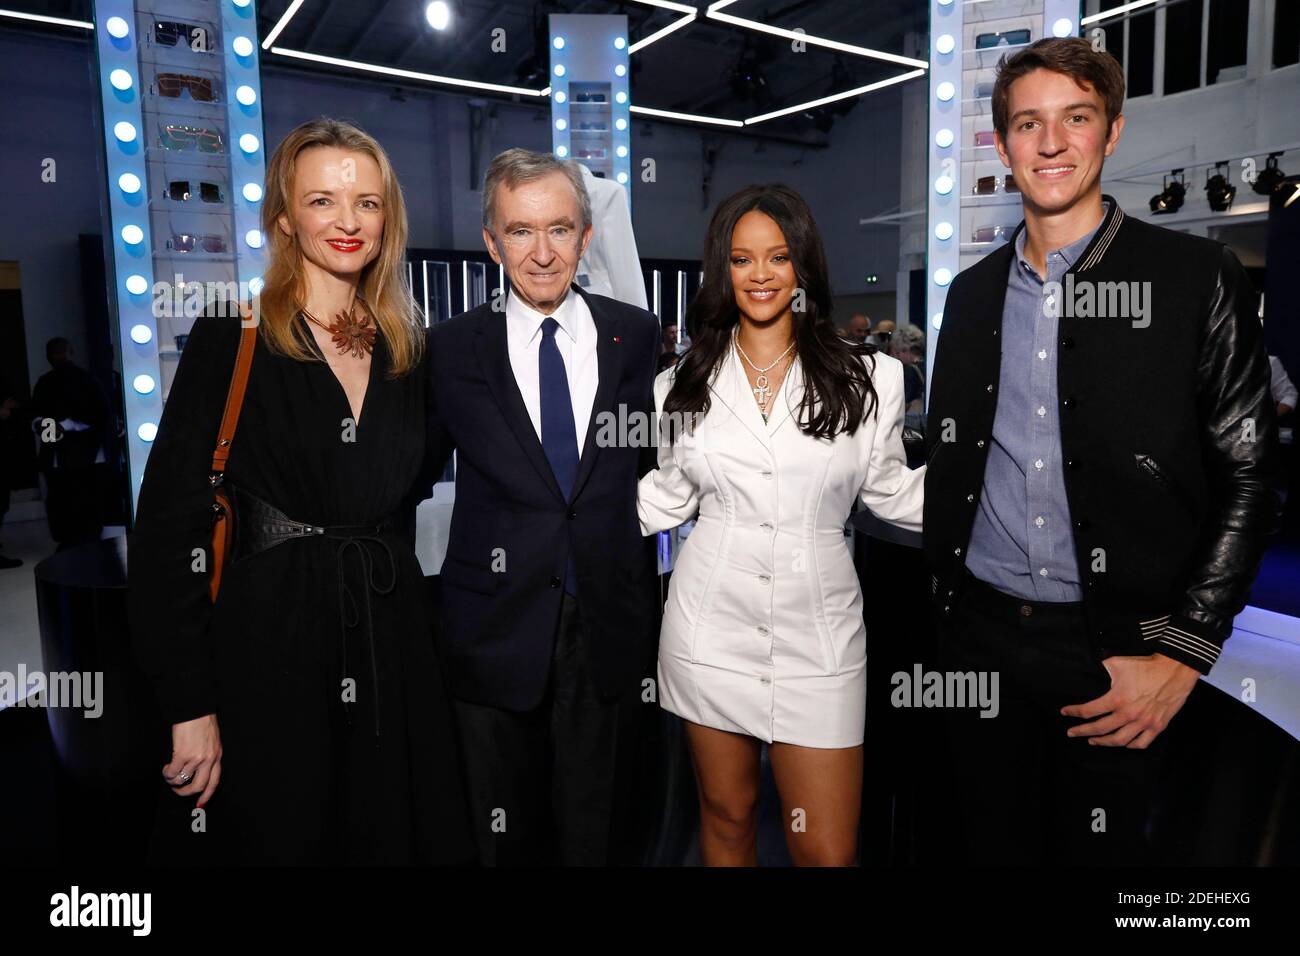 Handout - Rihanna, Delphine Arnault, Bernard Arnault and Alexandre